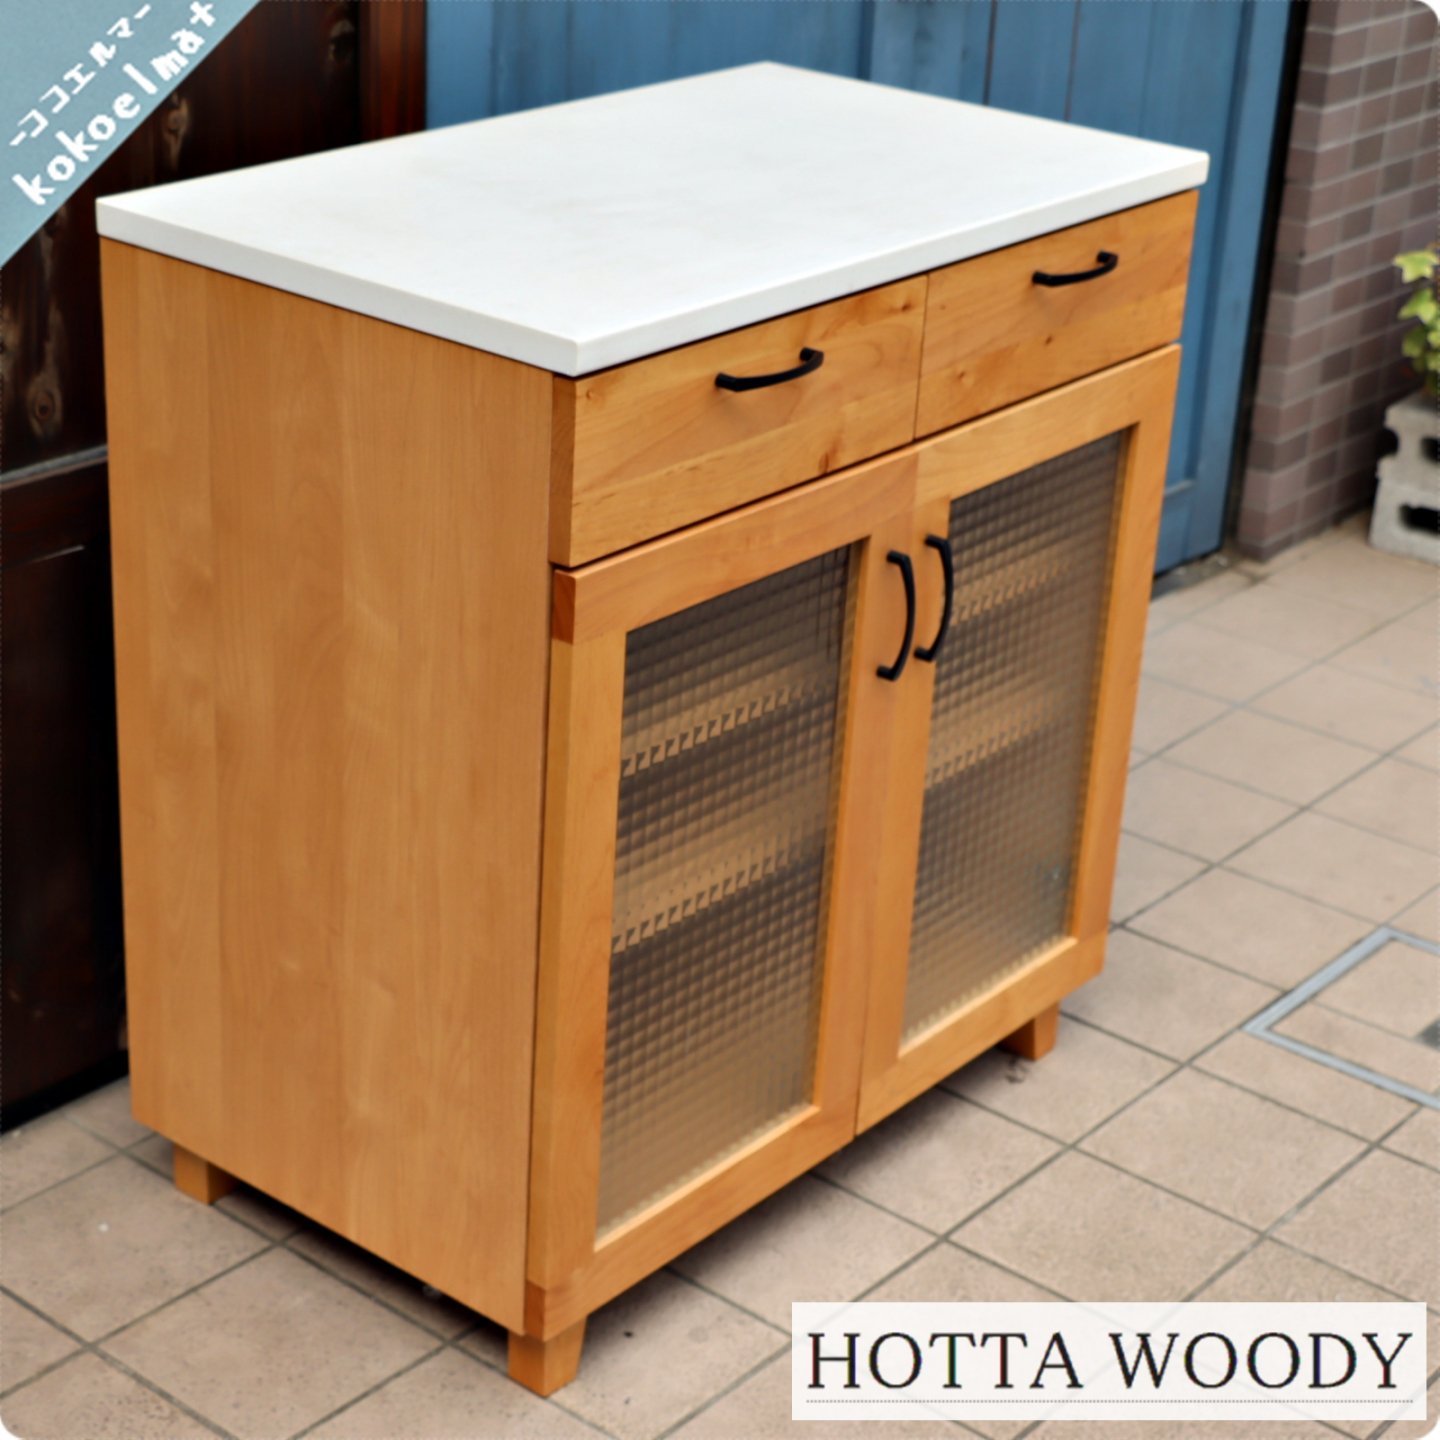 HOTTA WOODY(堀田木工所)のPIPPI(ピッピ) キッチンカウンターです 